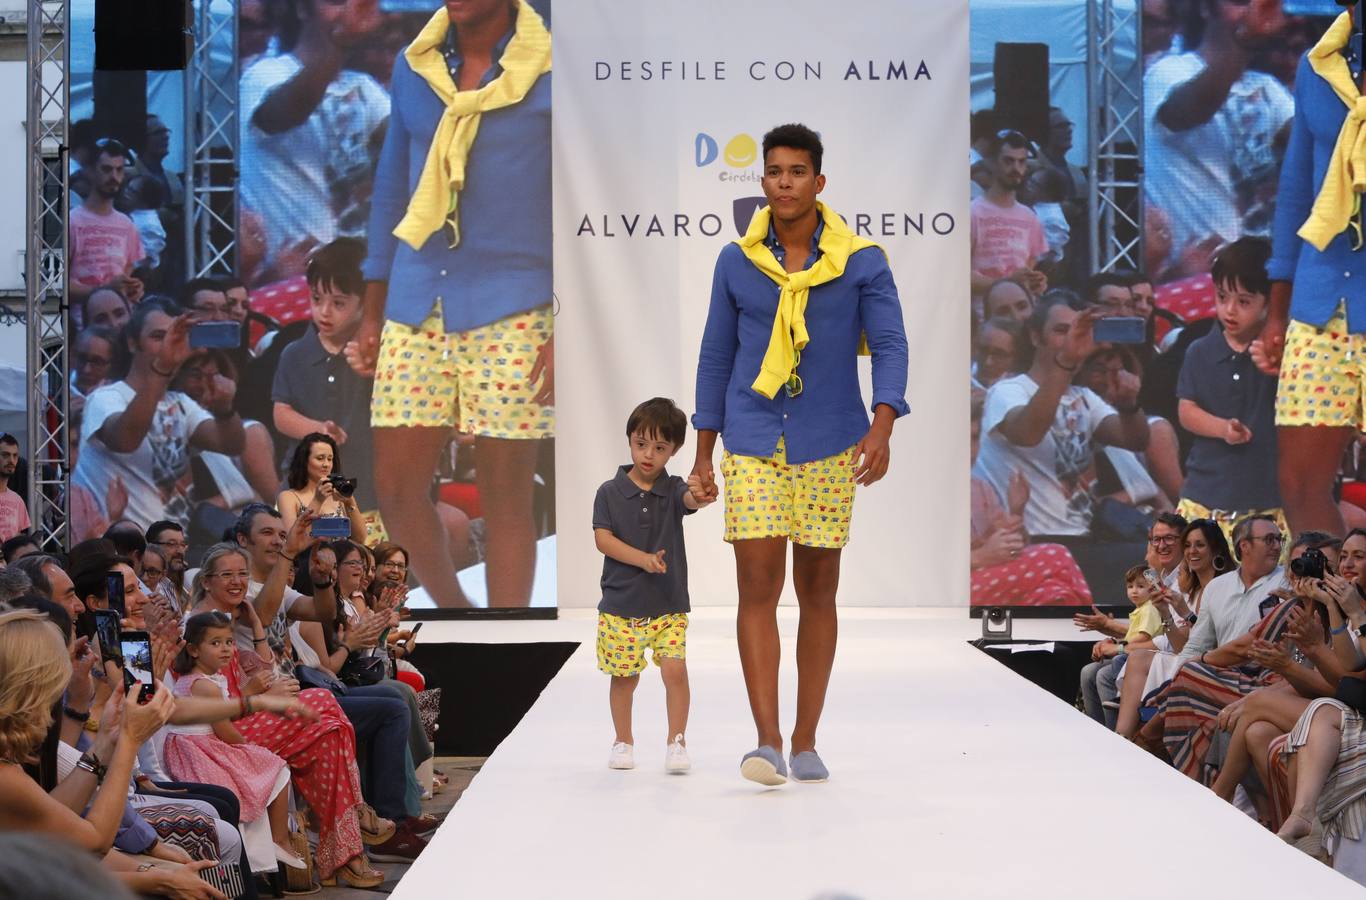 El desfile de Álvaro Moreno con chicos Down de la «Shopping Night» de Córdoba, en imágenes